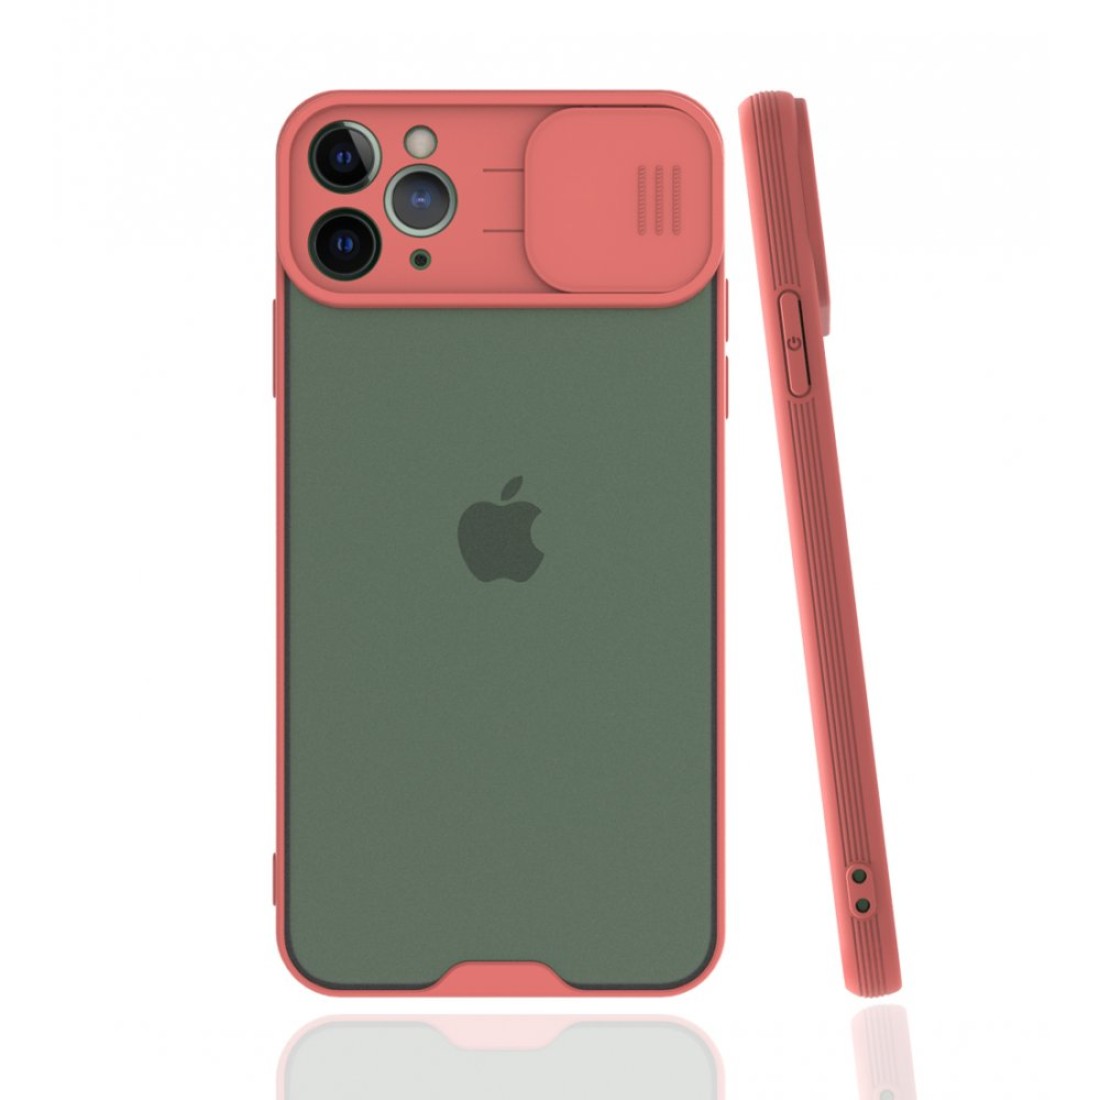 Apple iPhone 11 Pro Max Kılıf Platin Kamera Koruma Silikon - Pembe